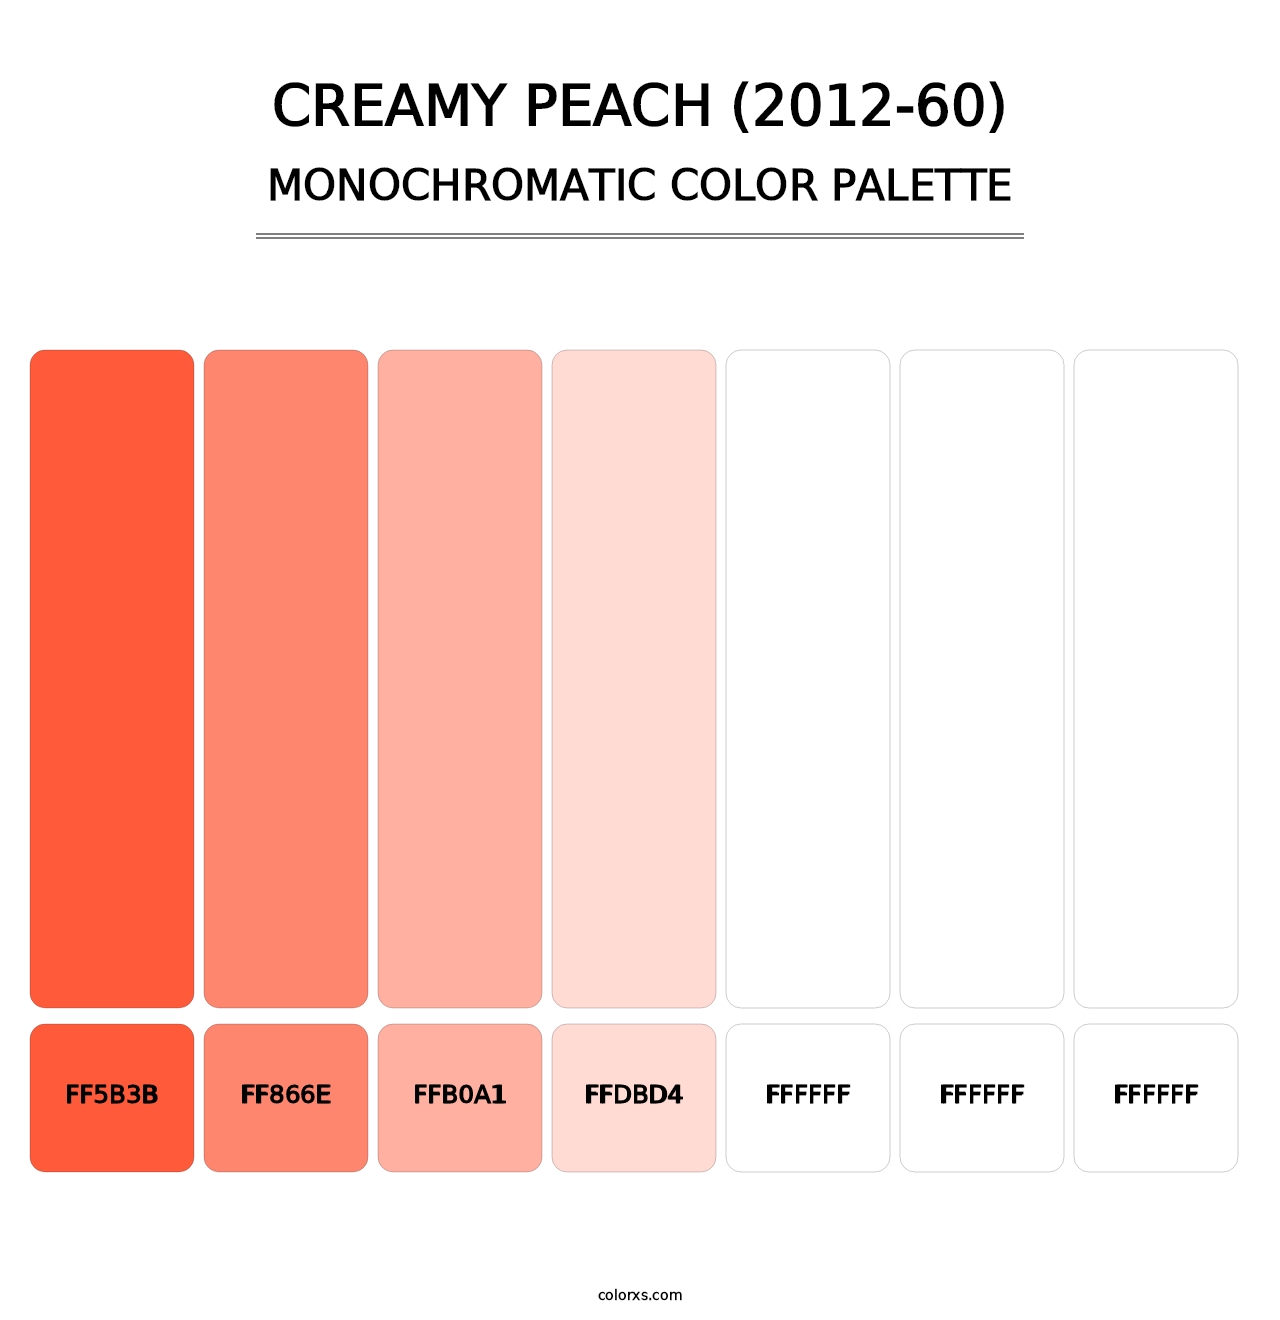 Creamy Peach (2012-60) - Monochromatic Color Palette